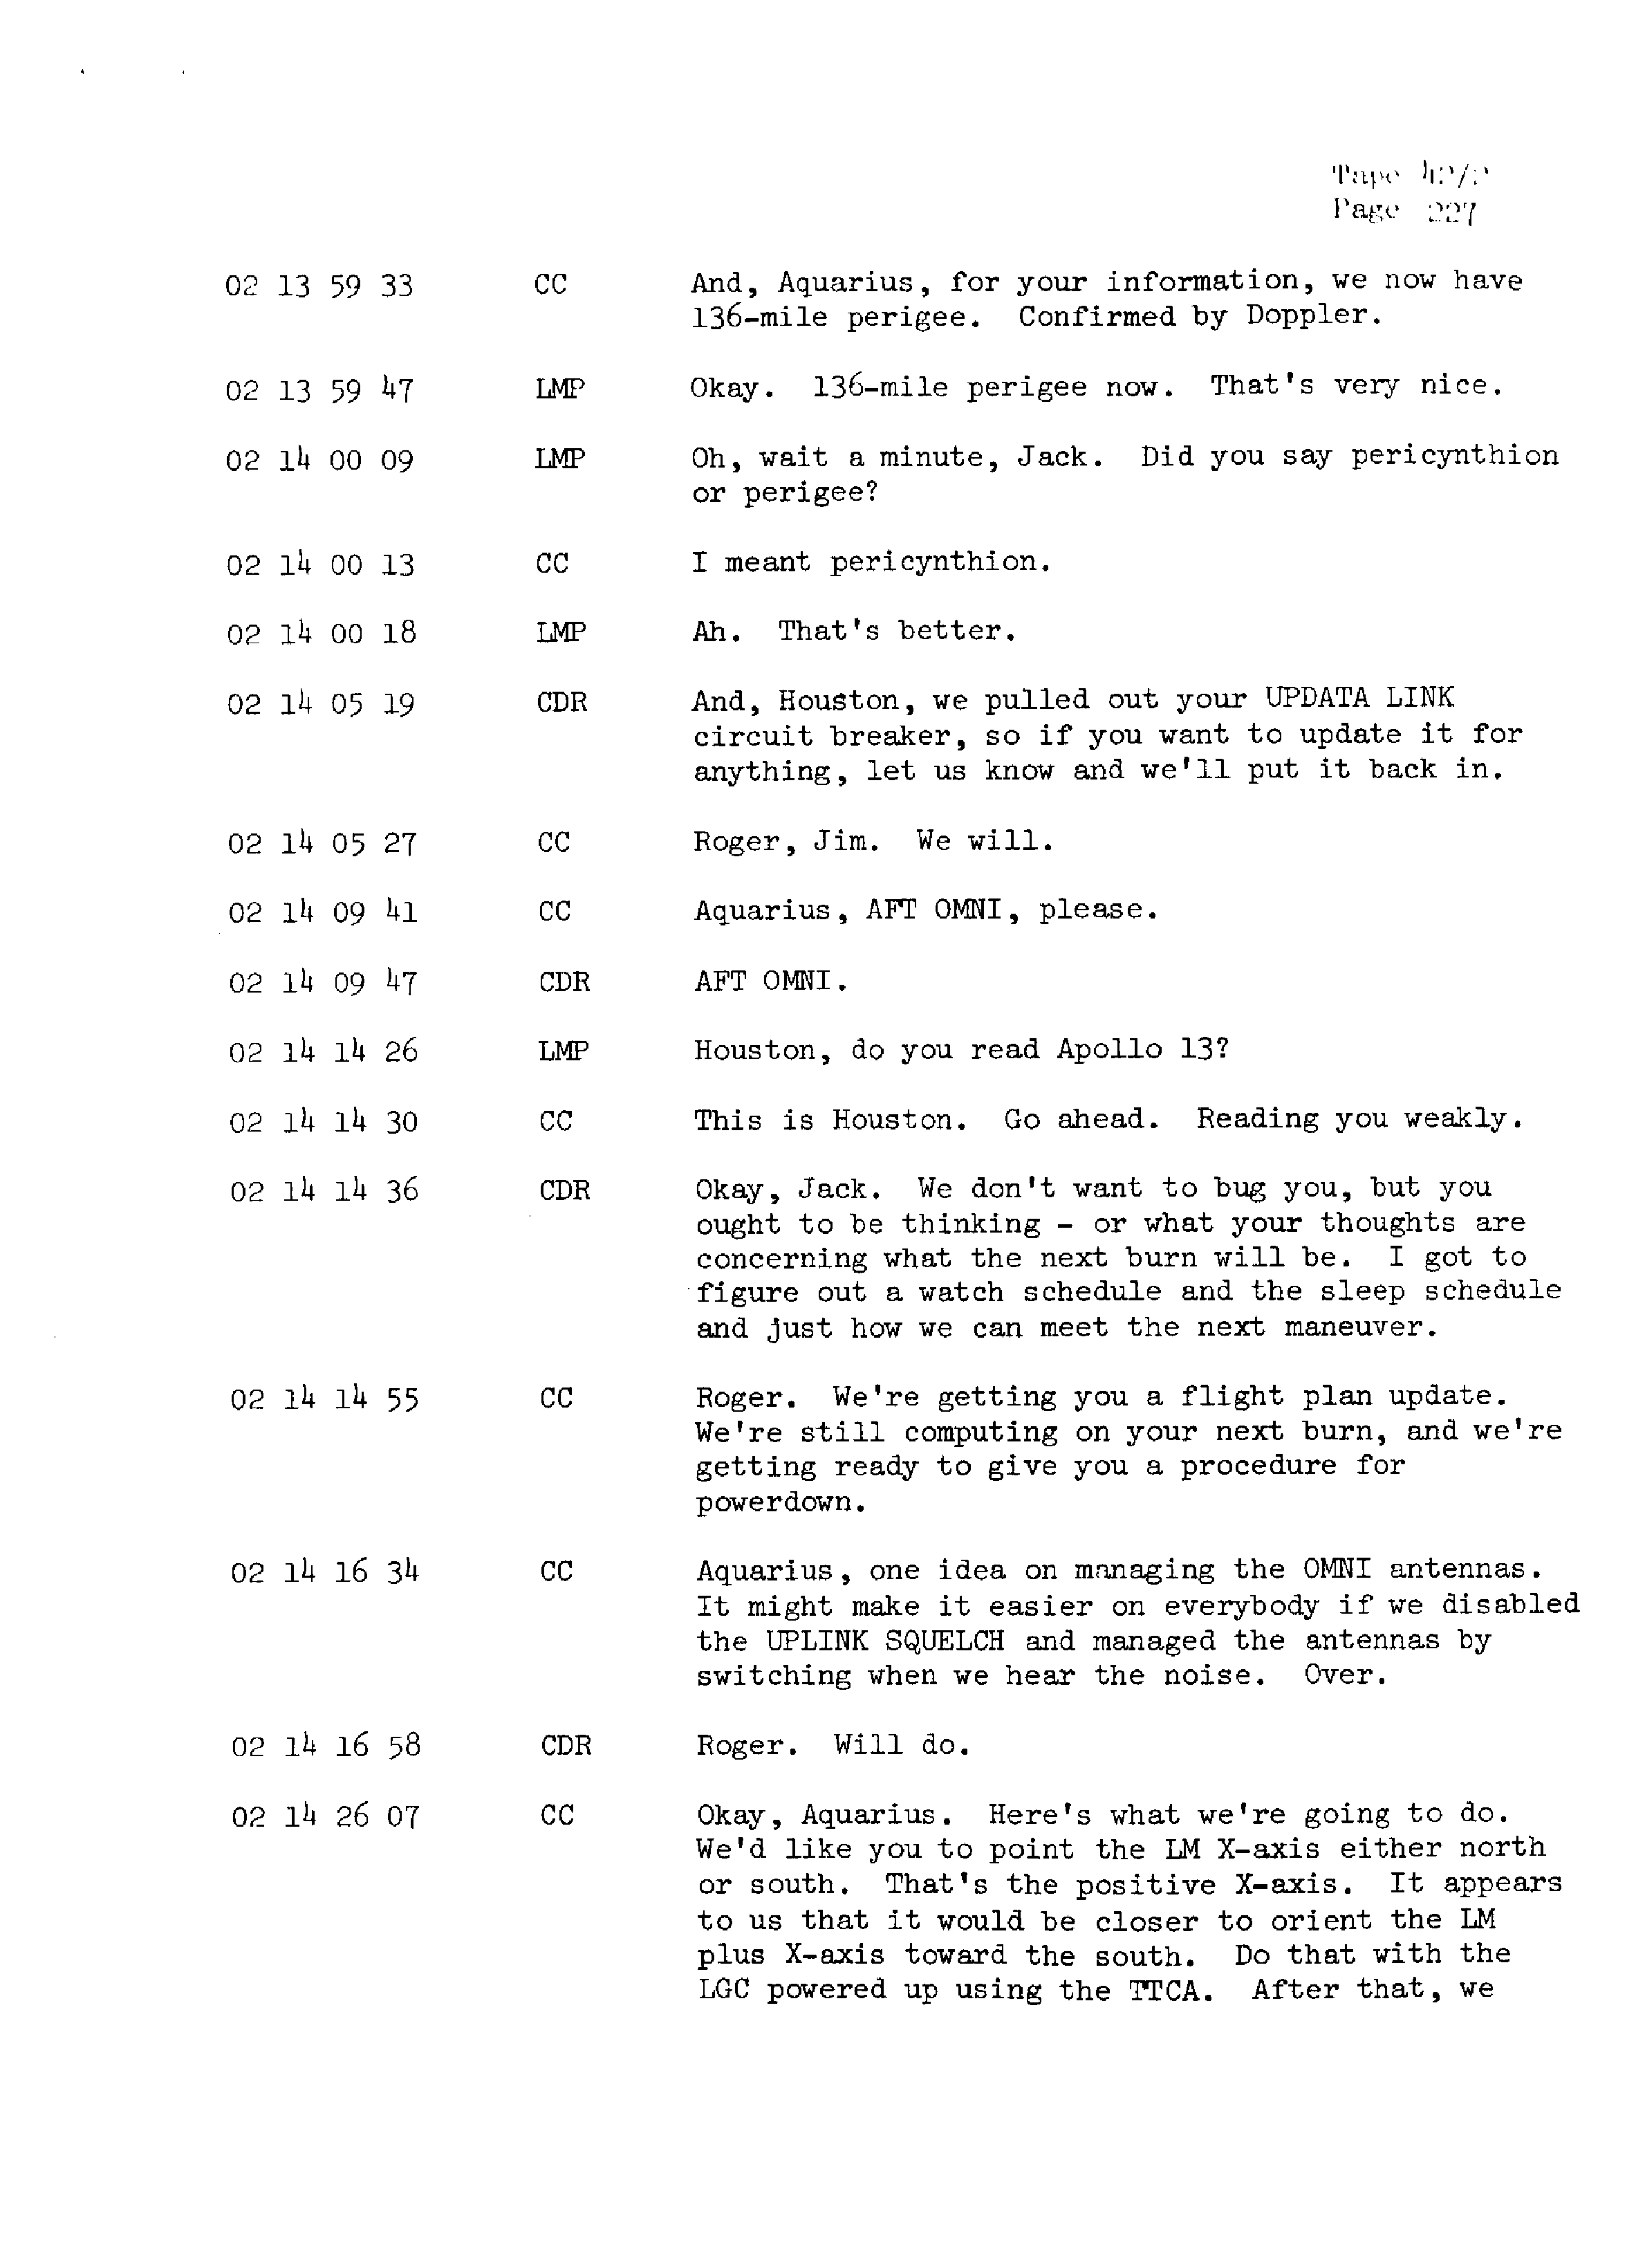 Page 234 of Apollo 13’s original transcript